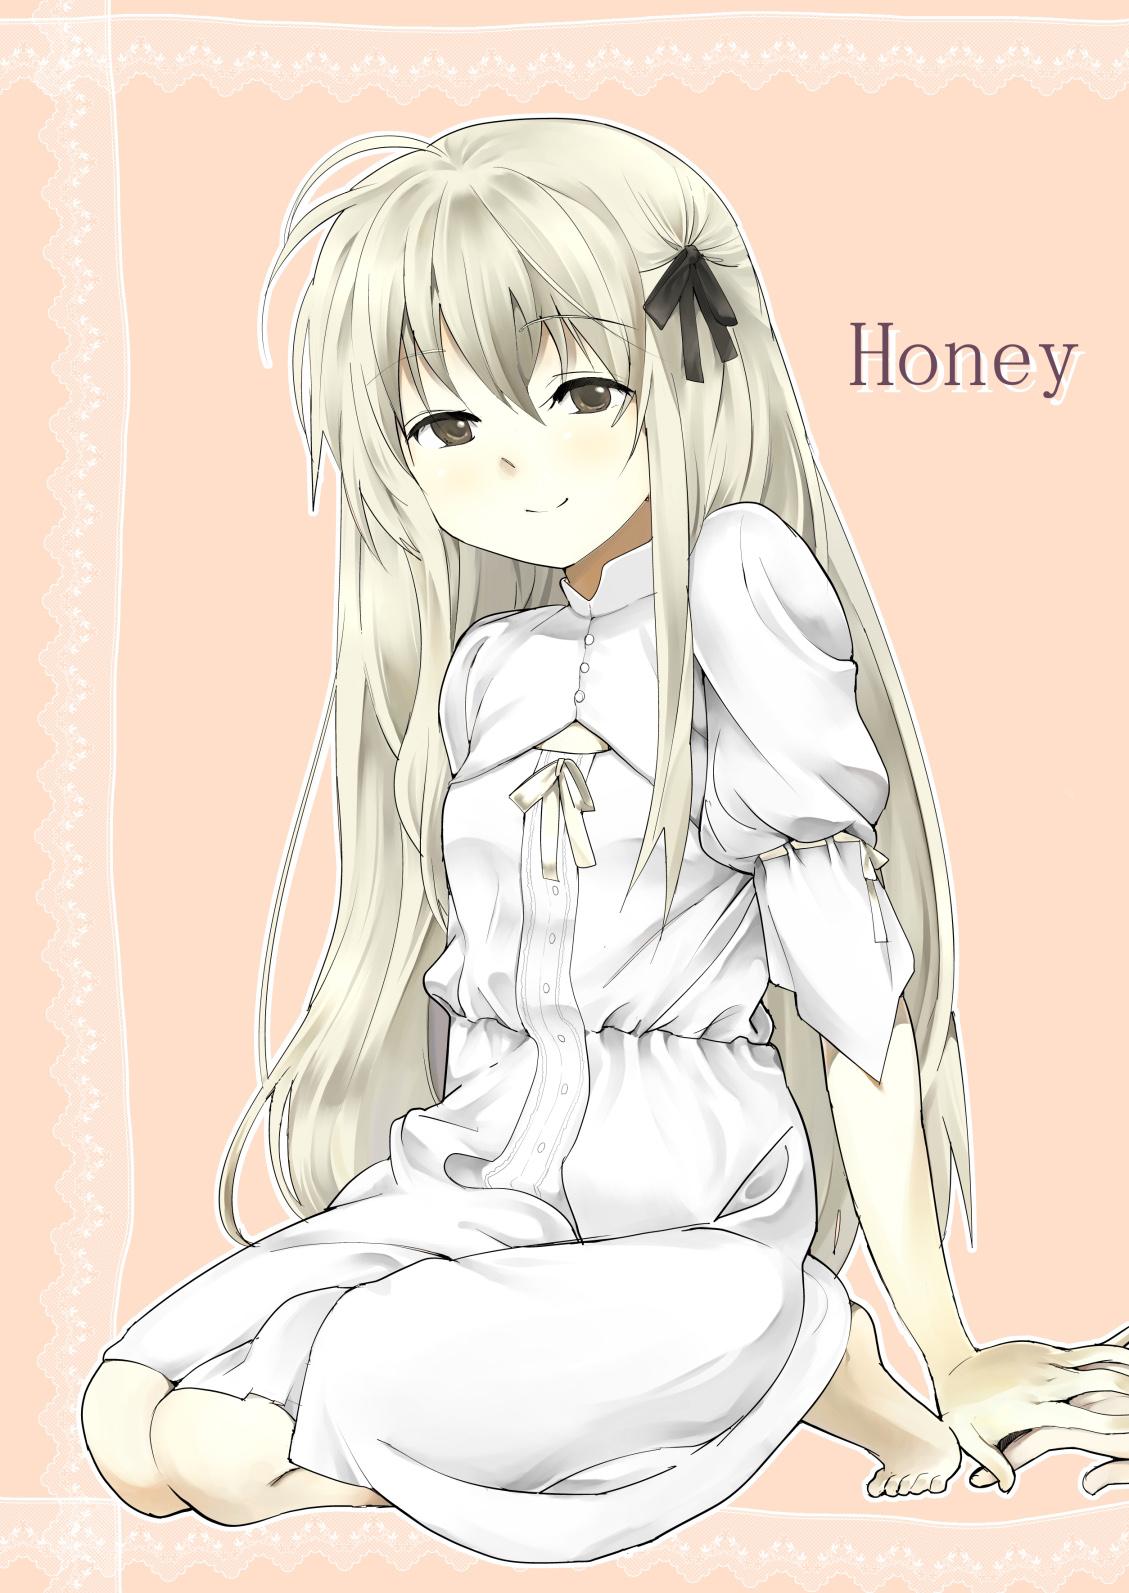 Eurosex Honey - Yosuga no sora Livecam - Picture 1